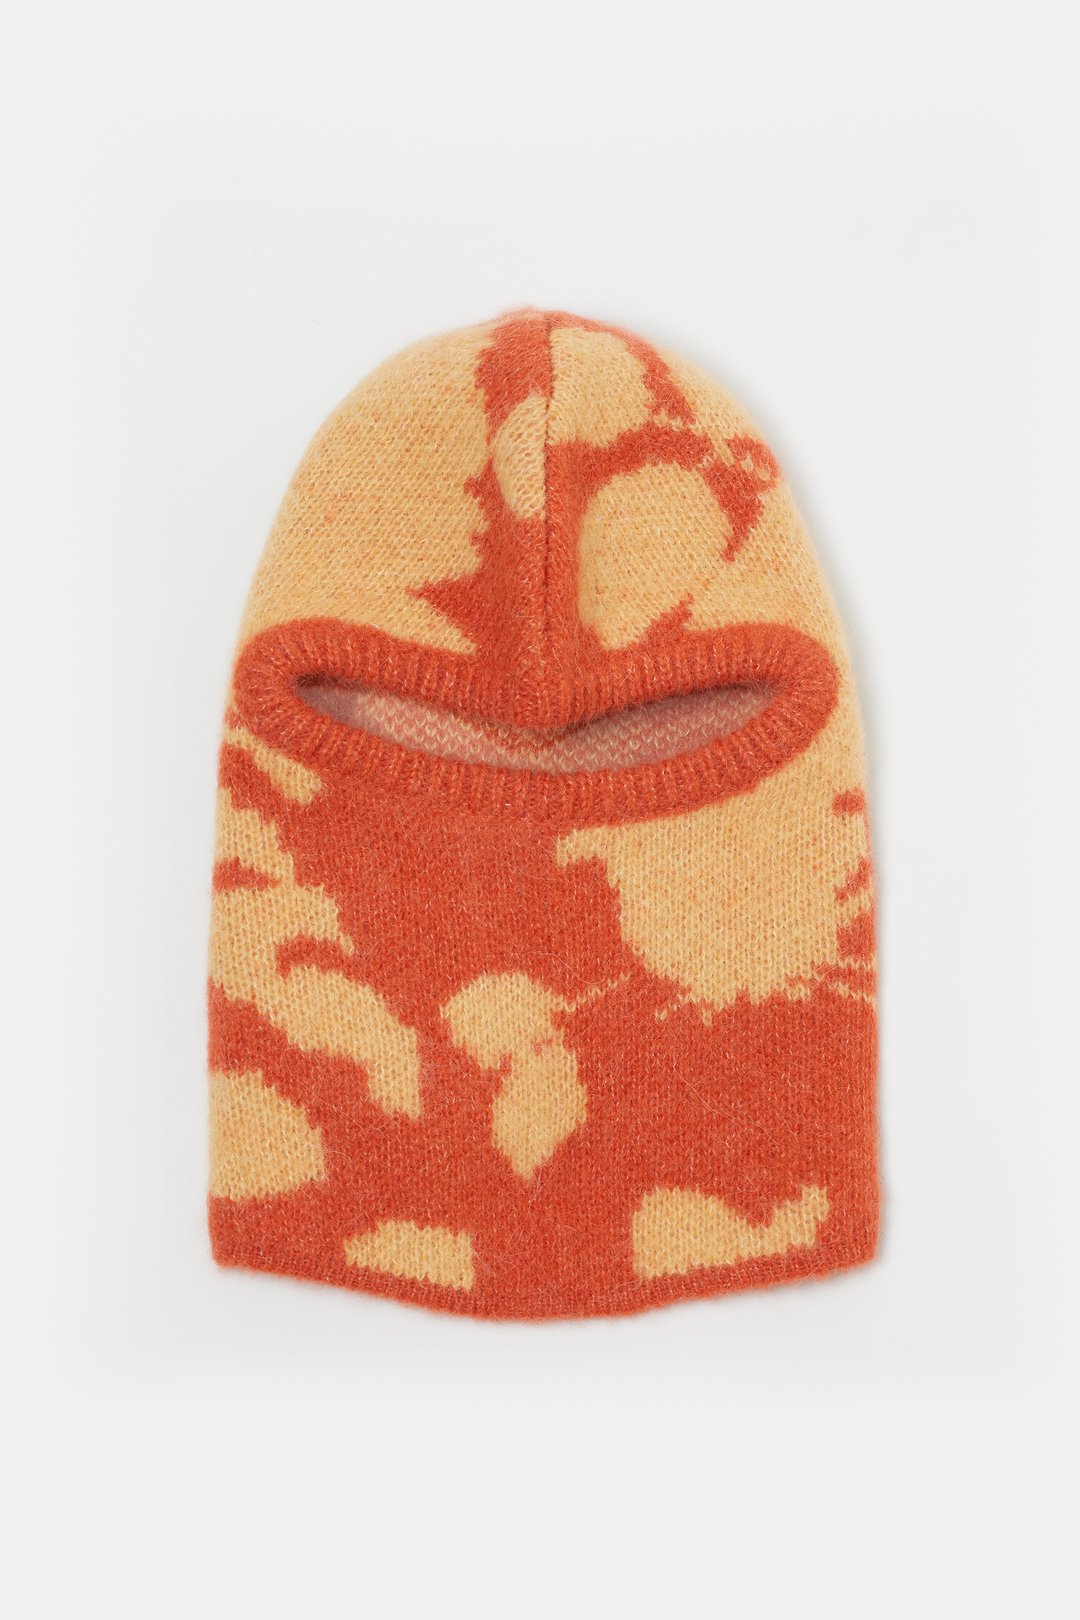 Cagoule lilas et orange, masque de ski au crochet, cagoule tricotée,  chapeau cagoule, tricot cagoule -  France